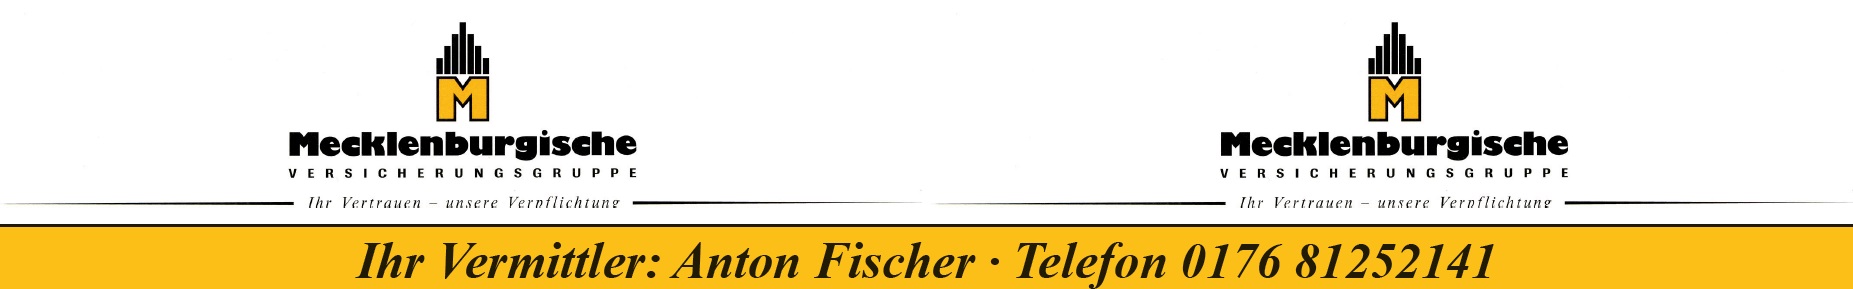 BFM_Tischaufkleber_Mecklenburgische.jpg